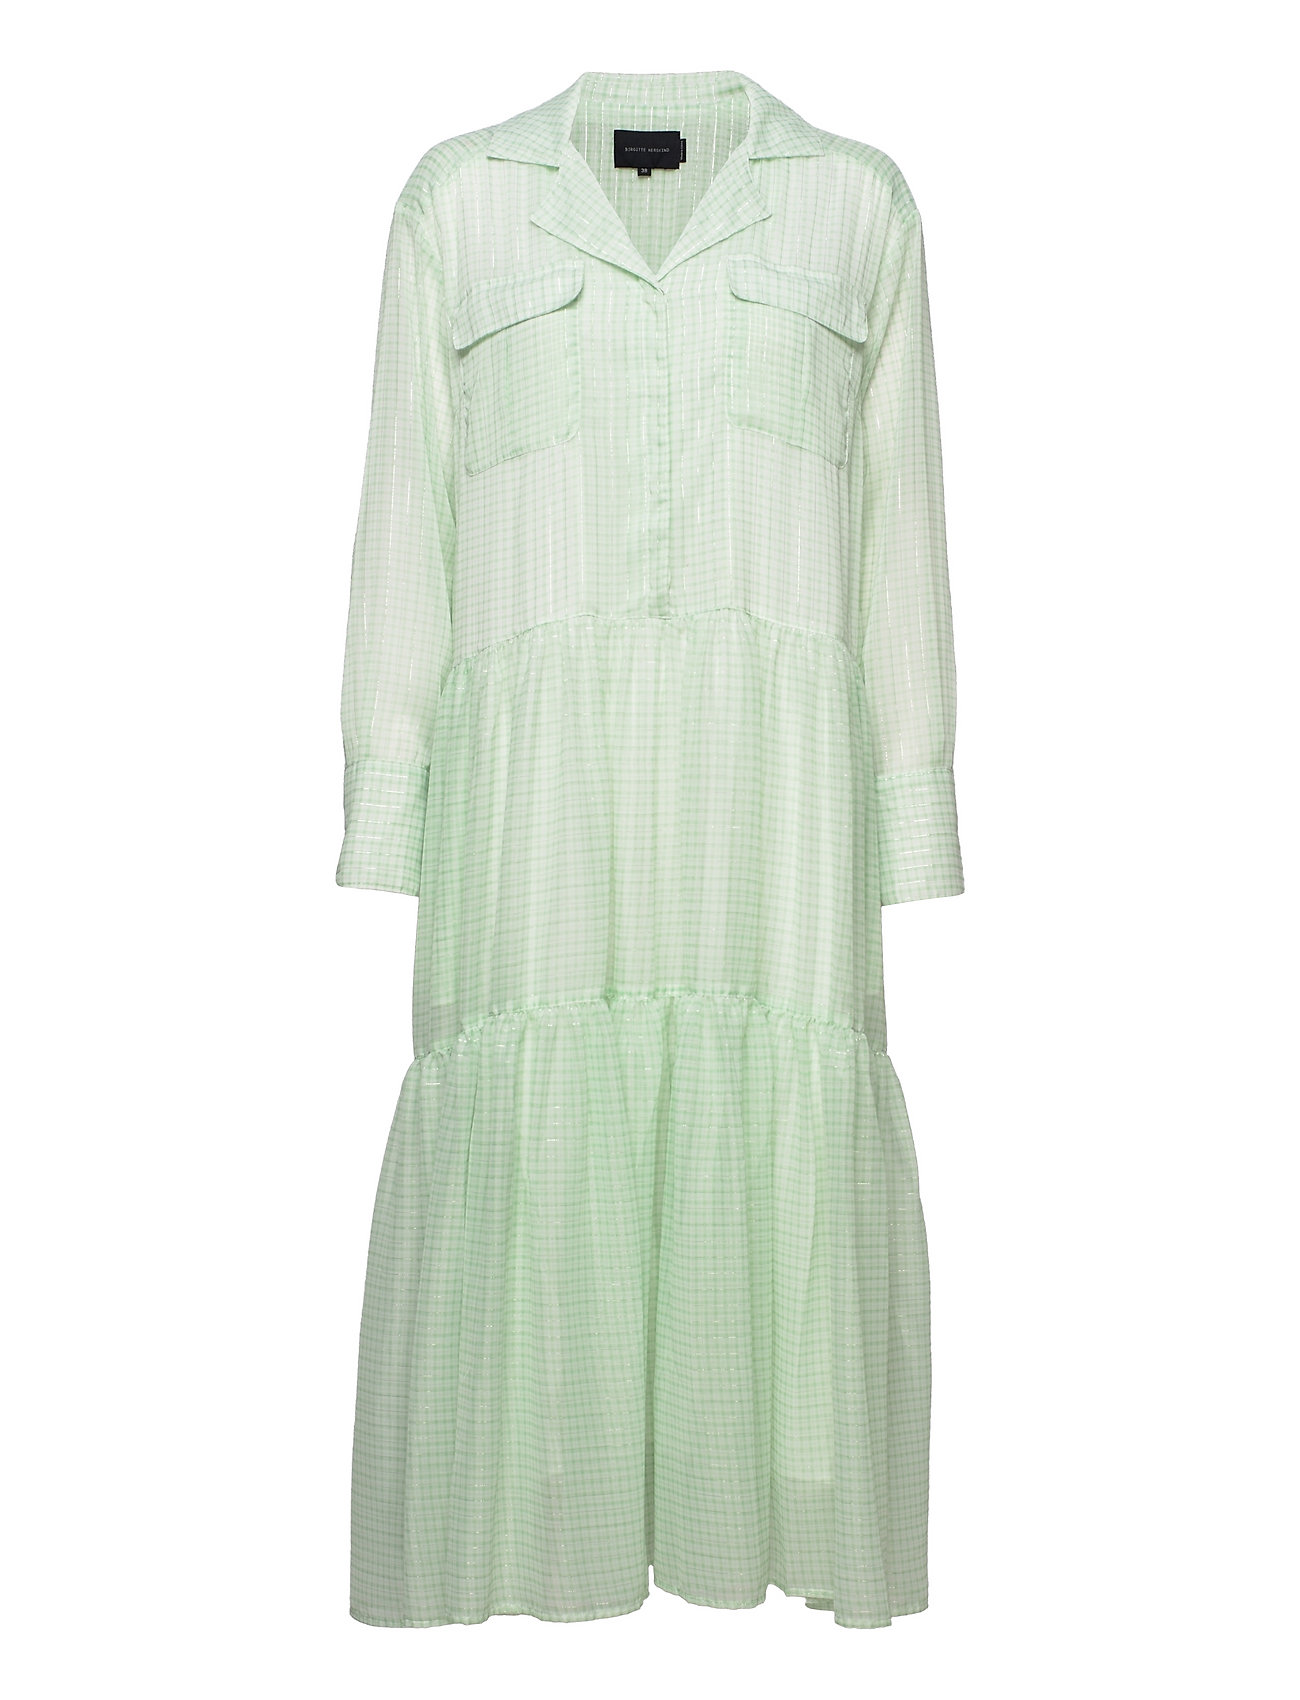 Trine Ltd. Dress - Light Green Checks Maxiklänning Festklänning Green Birgitte Herskind